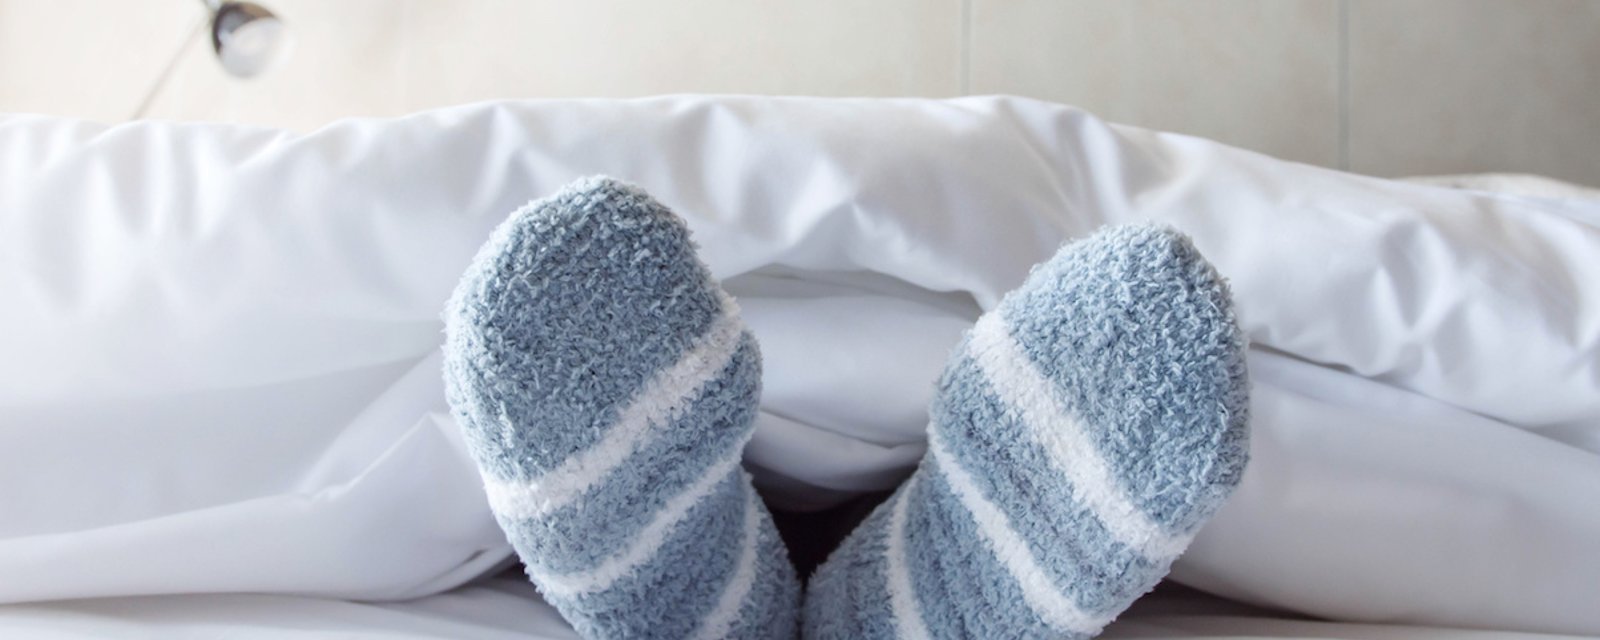 Découvrez pourquoi vous devriez dormir avec des chaussettes